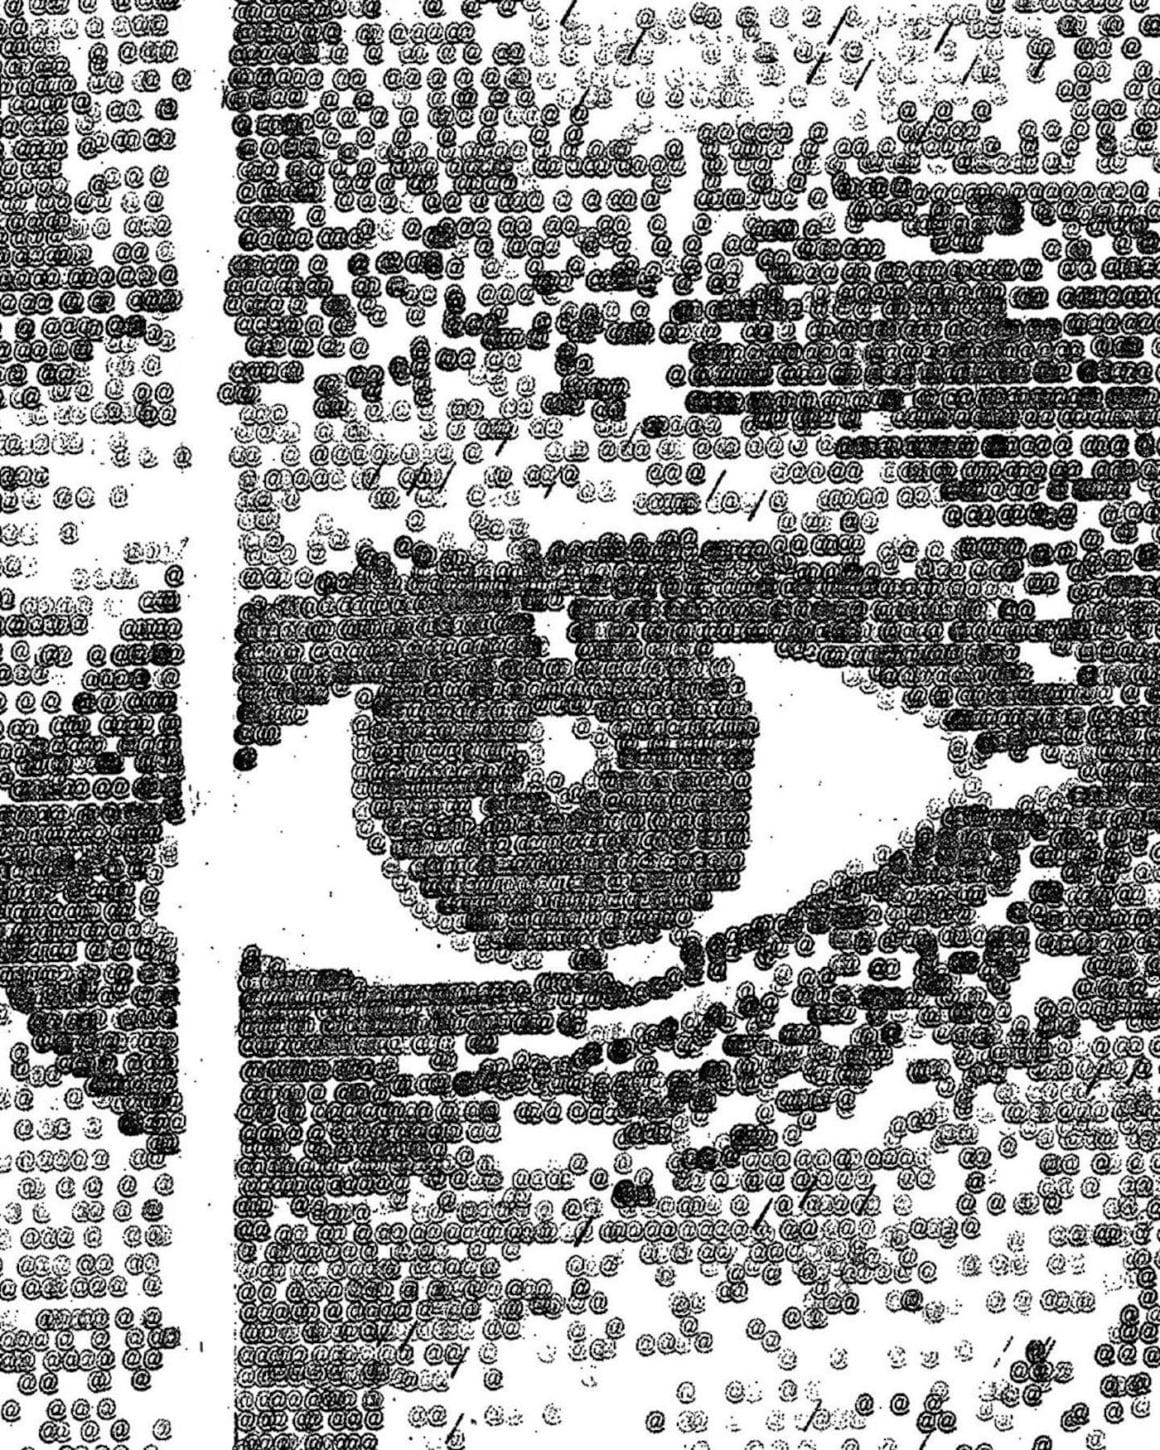 Détail d'un œil réalisé par James Cook sur une machine à écrire